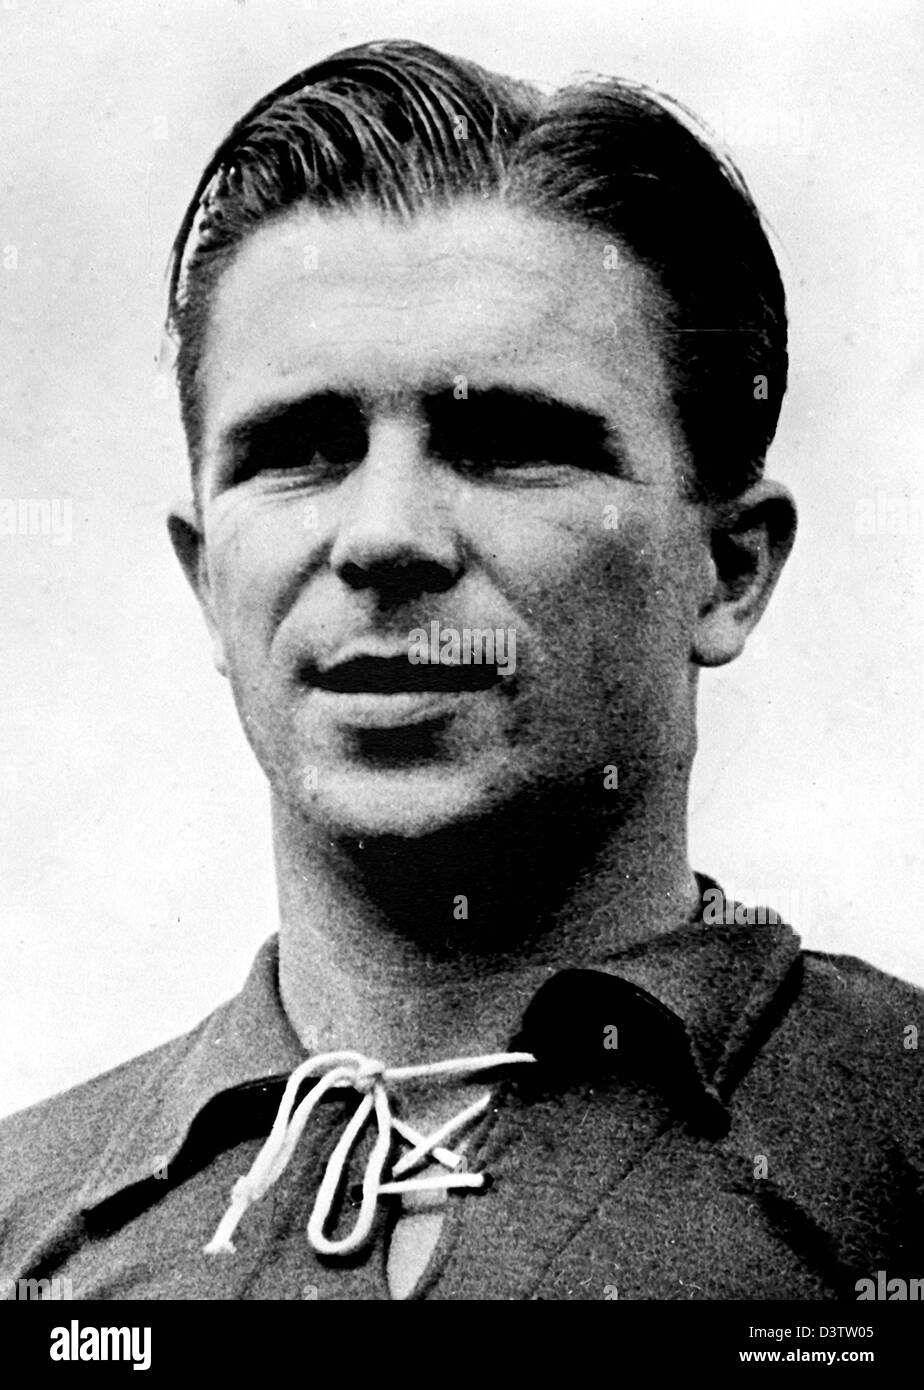 (Datei) - ungarische Fußballlegende Ferenc Puskas abgebildet auf der World Cup 1954 in der Schweiz 1954. Puskas, verstarb am Freitag, 17. November 2006 im Alter von 79. Foto: Dpa Stockfoto